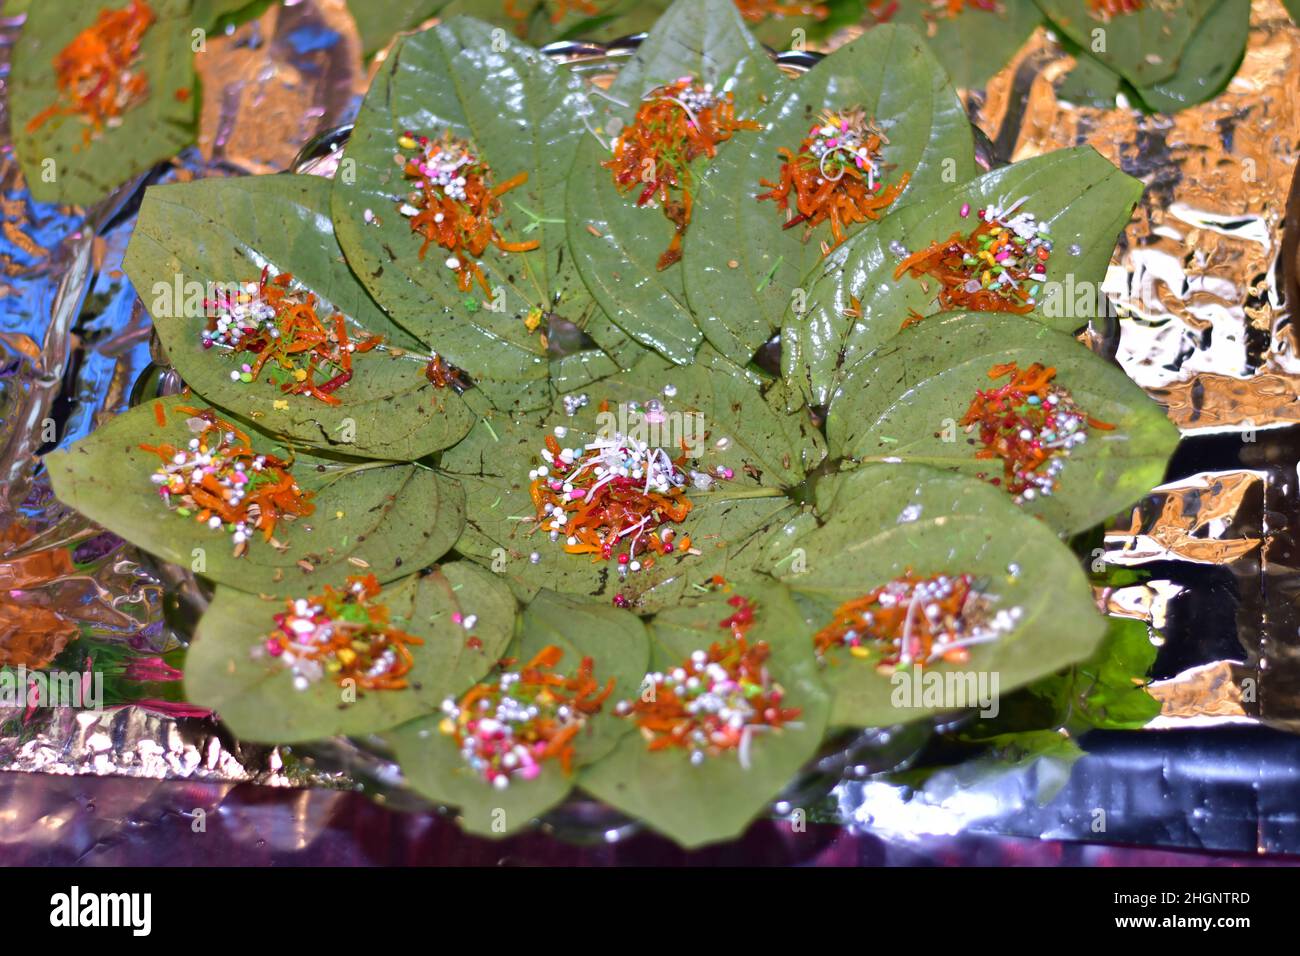 Betel leaf (Benarasi pan) Indian Mouth freshnar Stock Photo